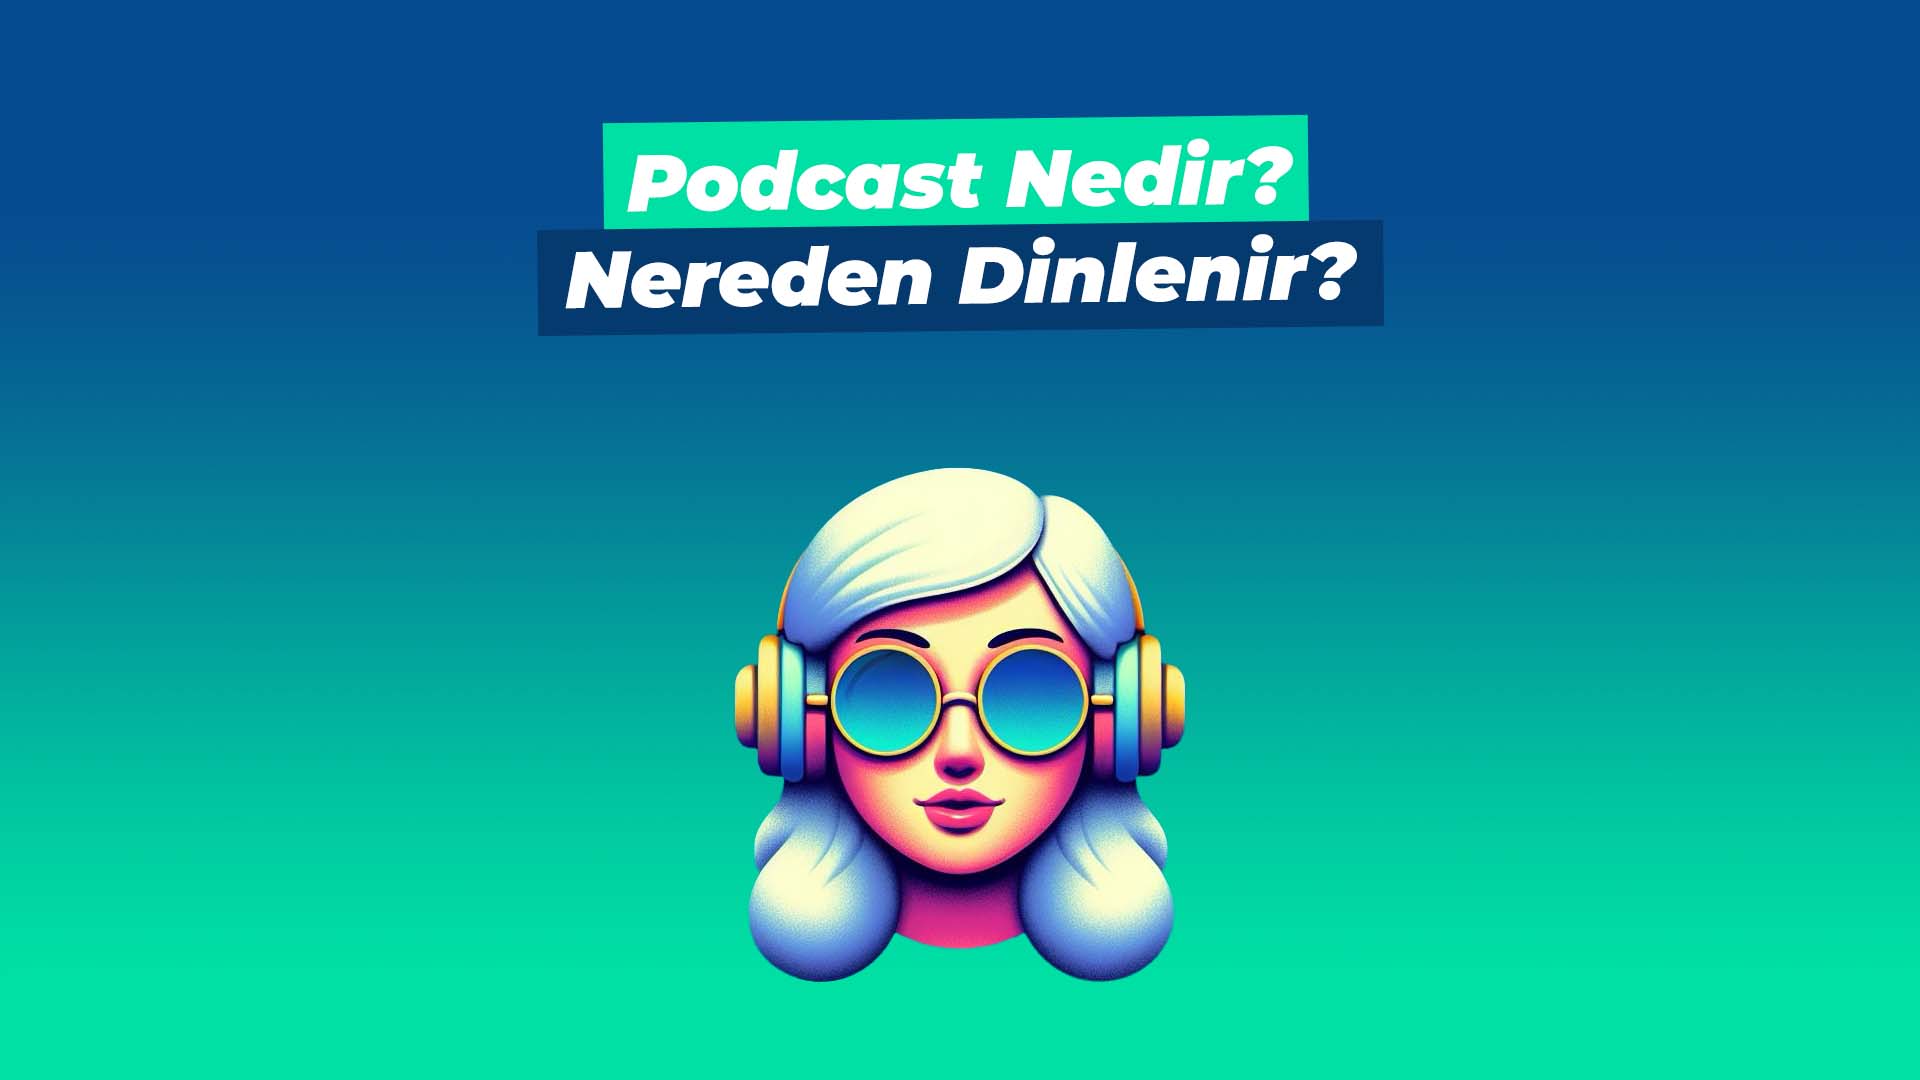 Podcast Nedir? Nereden Dinlenir?